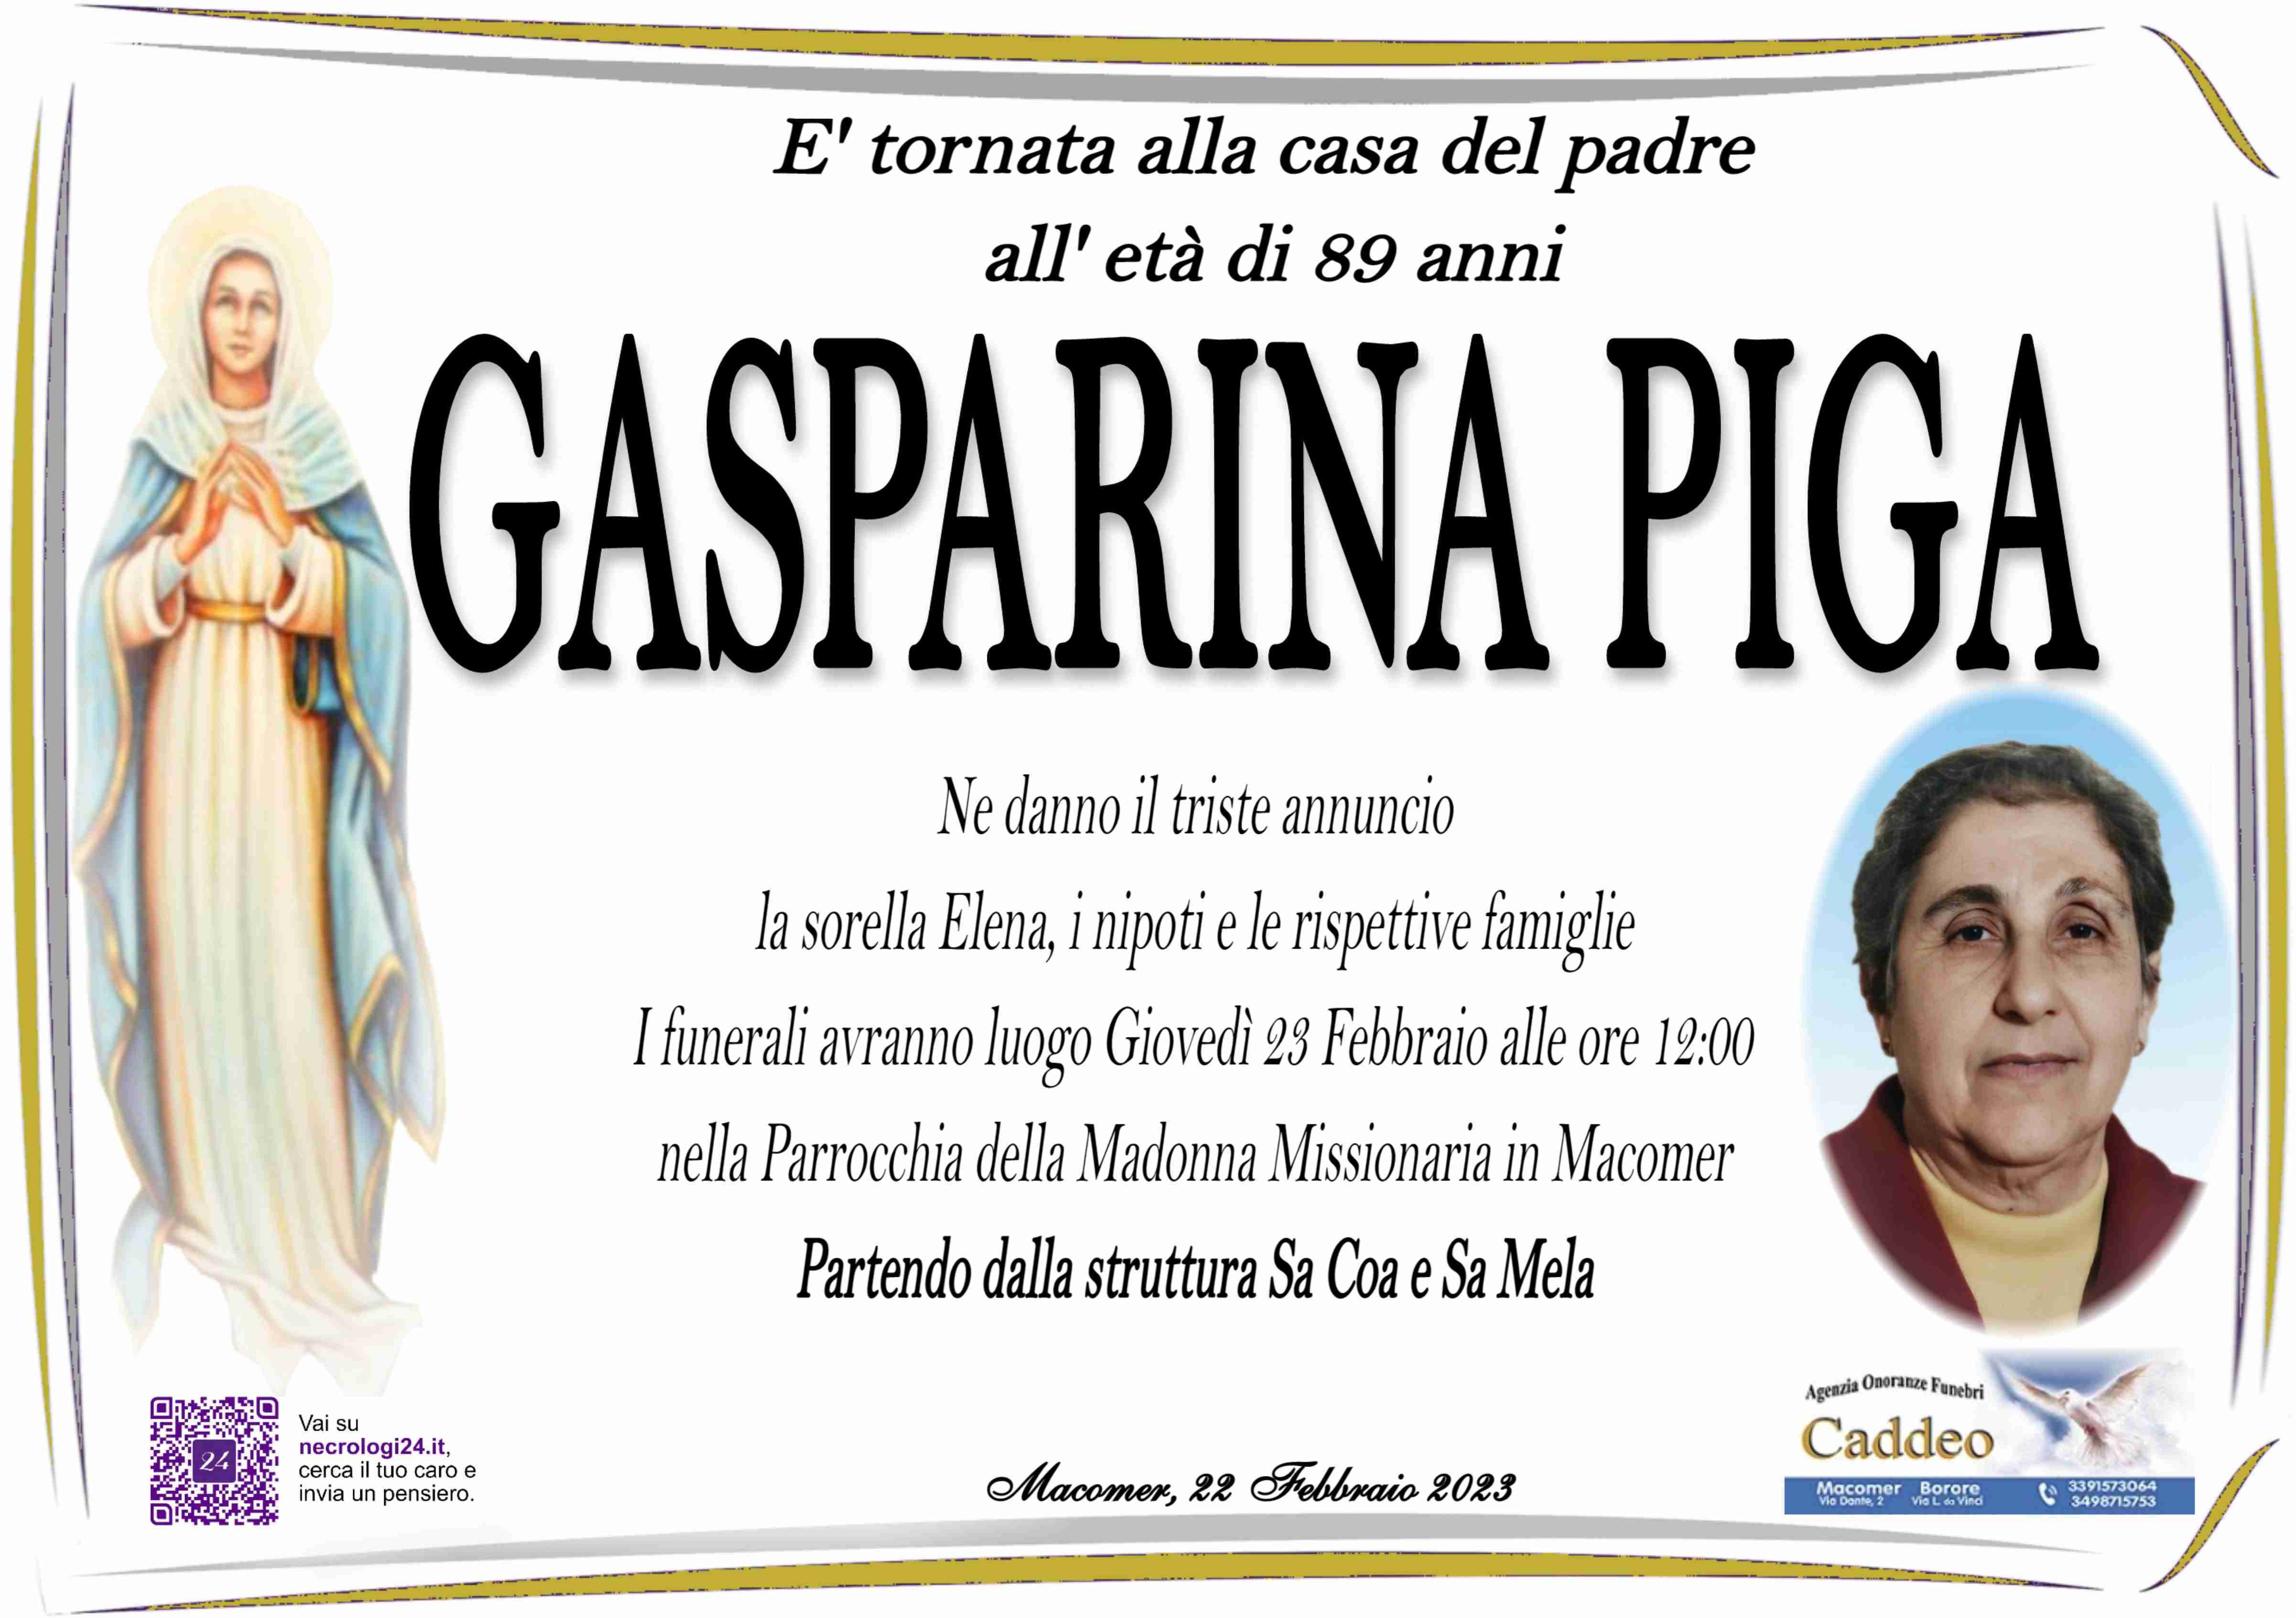 Gasparina Piga